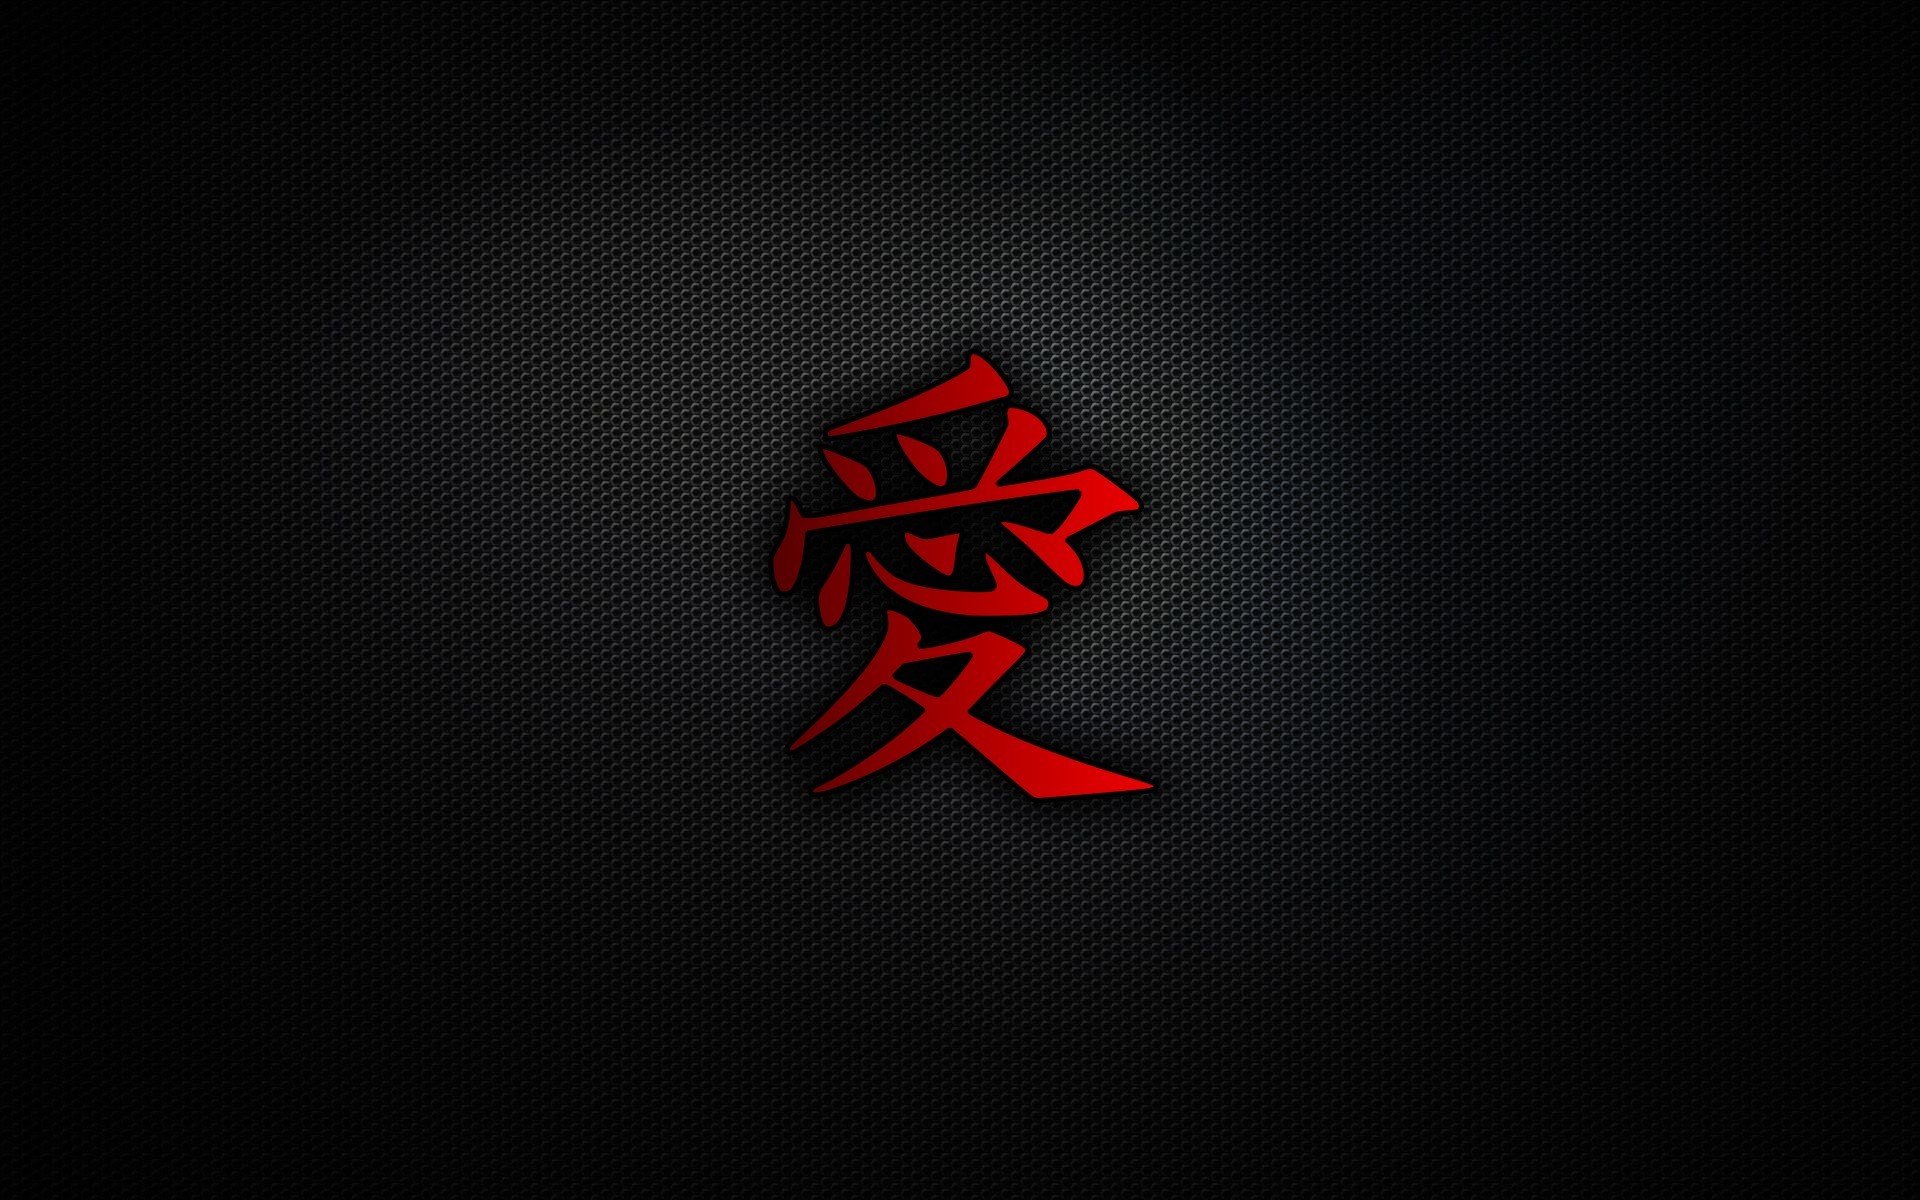 Wallpaper Samurai Jepang Logo Japanese Art Japan Samurai Art  Background  Download Free Image